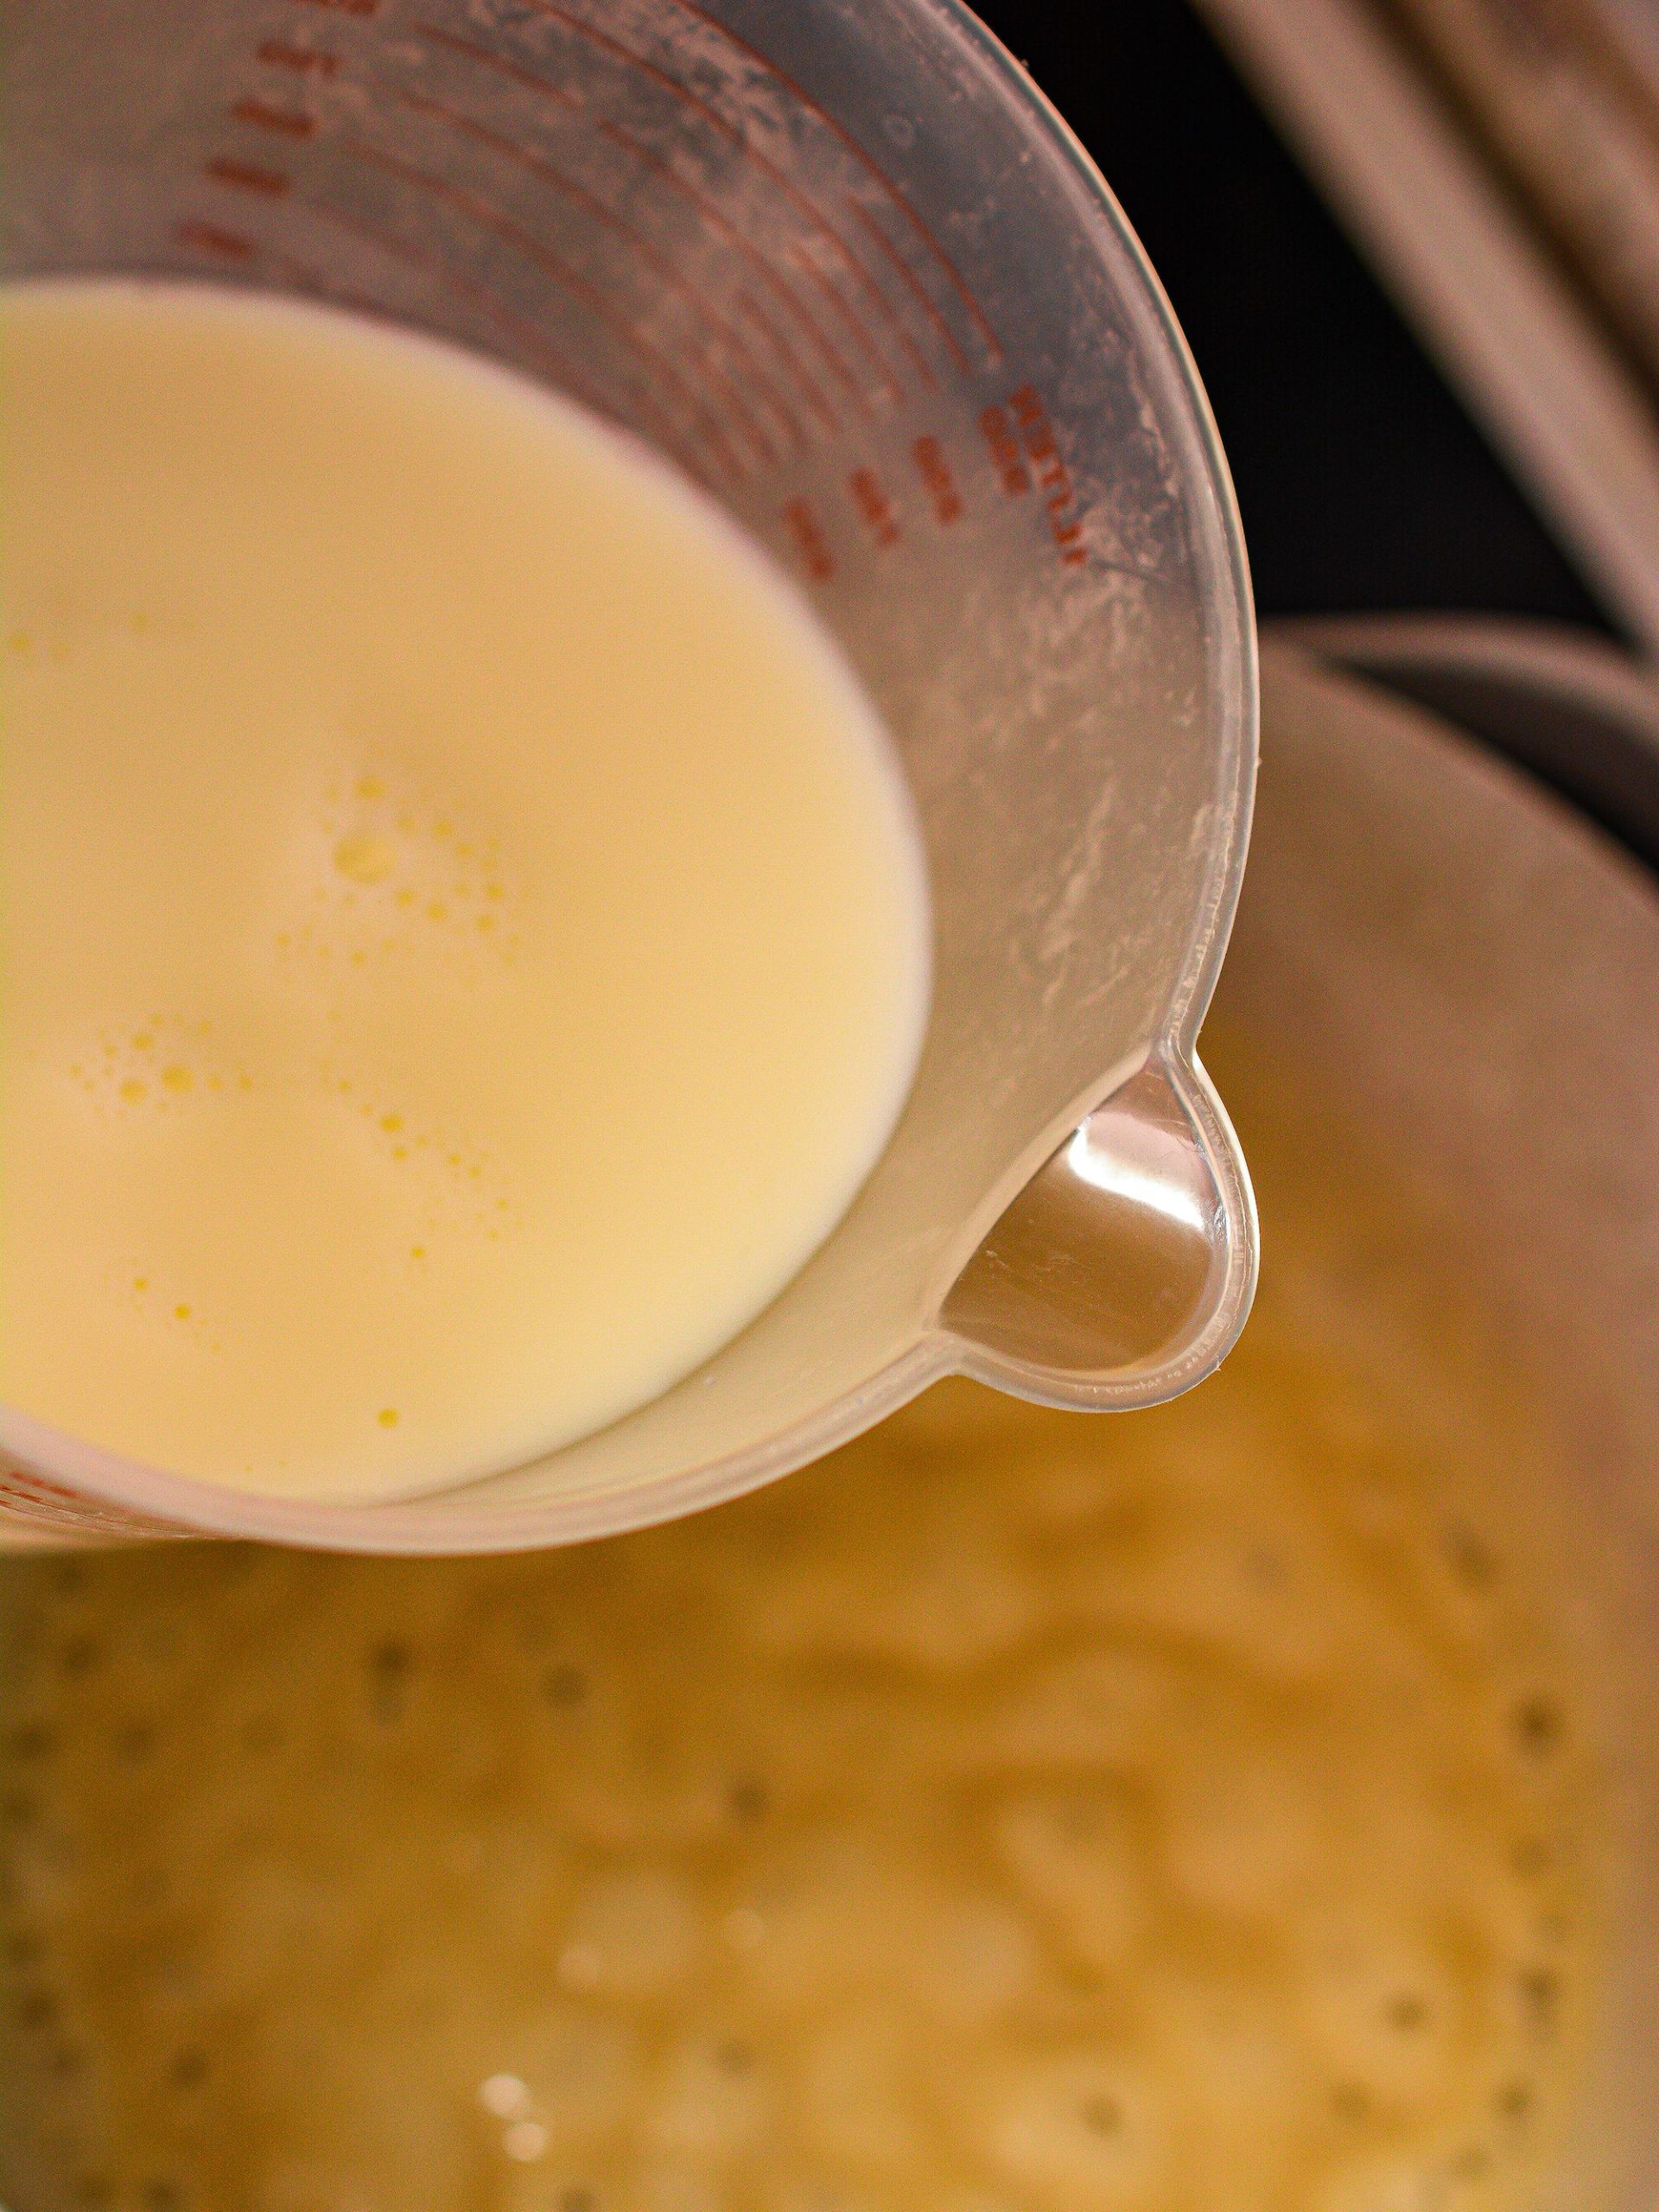 Stir in the milk until smooth.